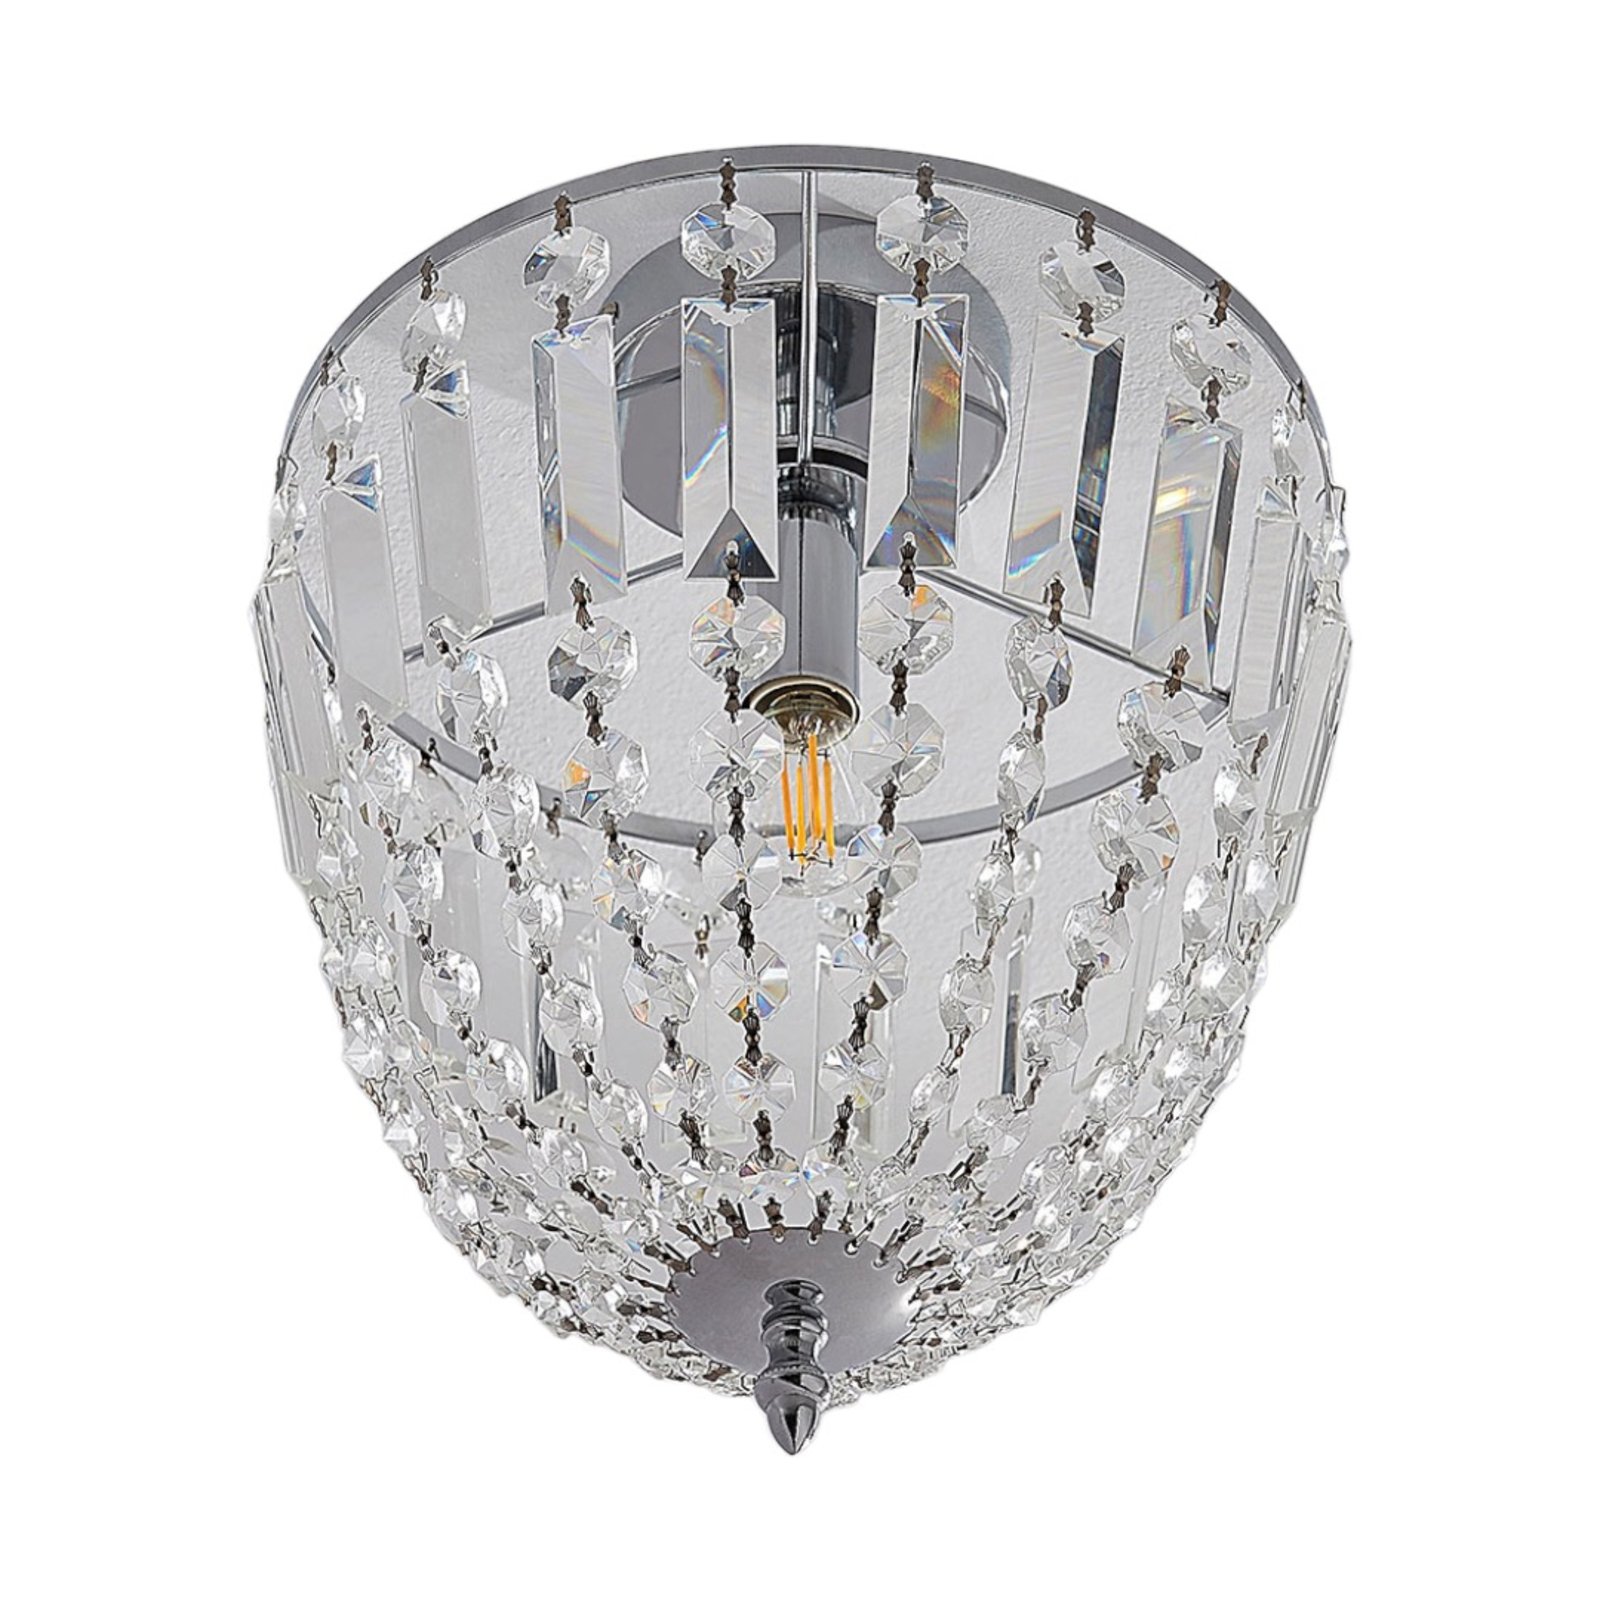 Strålende taklampe Lionello i glasskrystall